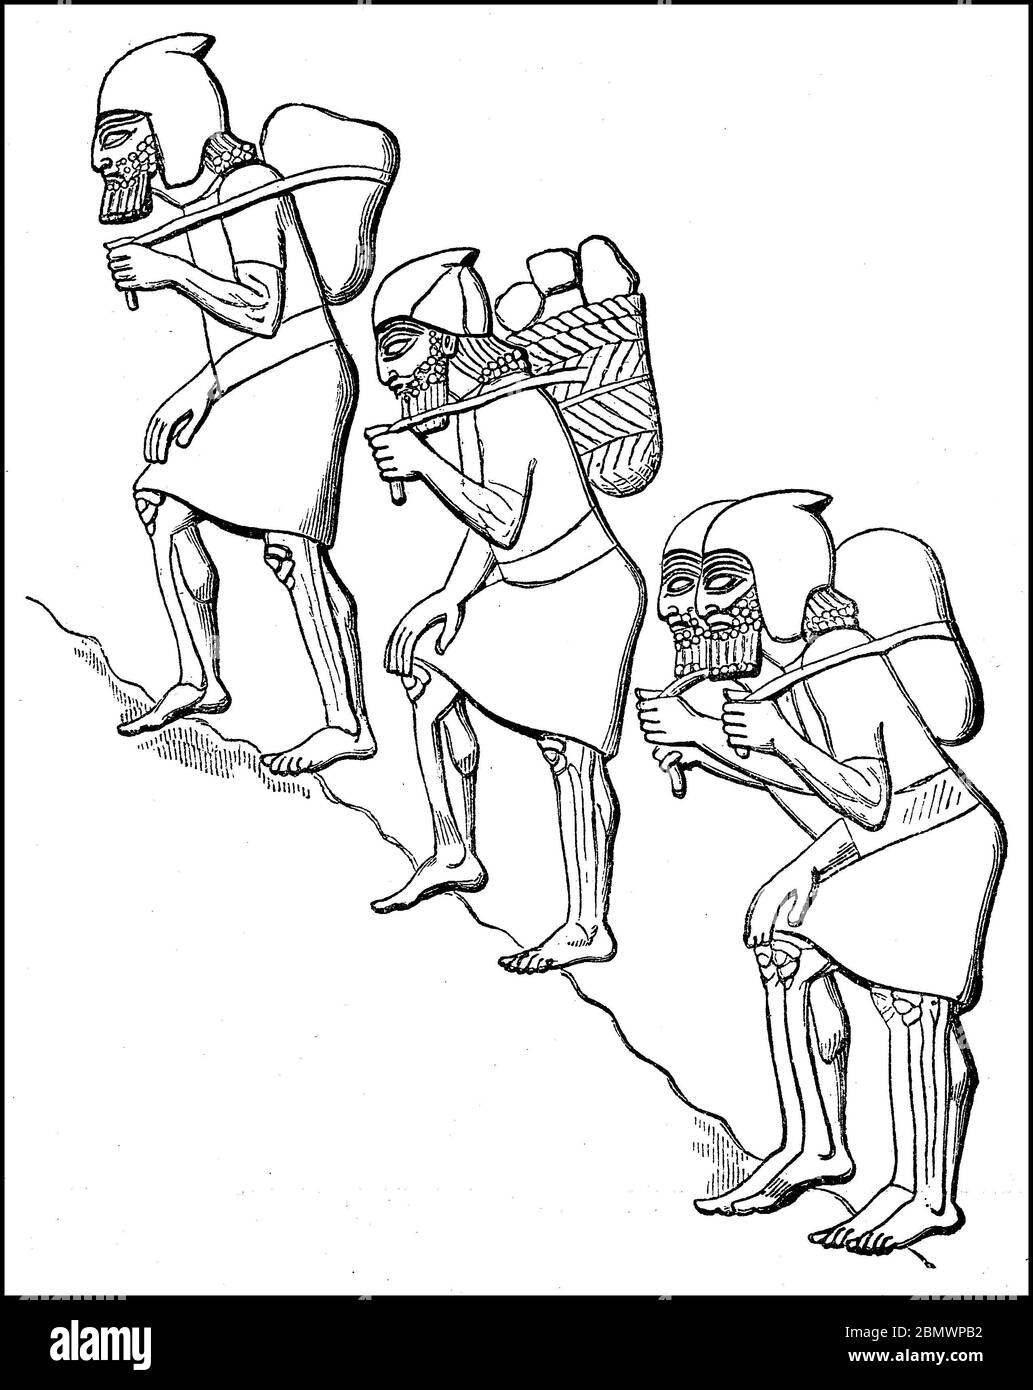 Jewish prisoners in the drudgery under Sennacherib, Sennacherib, Sanherib, Sin-achche-eriba, about 745 v. BC - January 16 680 v.. Chr., Was the son of Sargon II v. 705-680. Chr. Assyrian king  /  jüdische Gefangene bei der Fronarbeit unter Senacherib, Sin-ahhe-eriba, Sanherib, Sin-achche-eriba, etwa 745 v. Chr. - 16. Januar 680 v. Chr., war als Sohn Sargons II. von 705 bis 680 v. Chr. assyrischer König, Historisch, historical, digital improved reproduction of an original from the 19th century / digitale Reproduktion einer Originalvorlage aus dem 19. Jahrhundert, Stock Photo